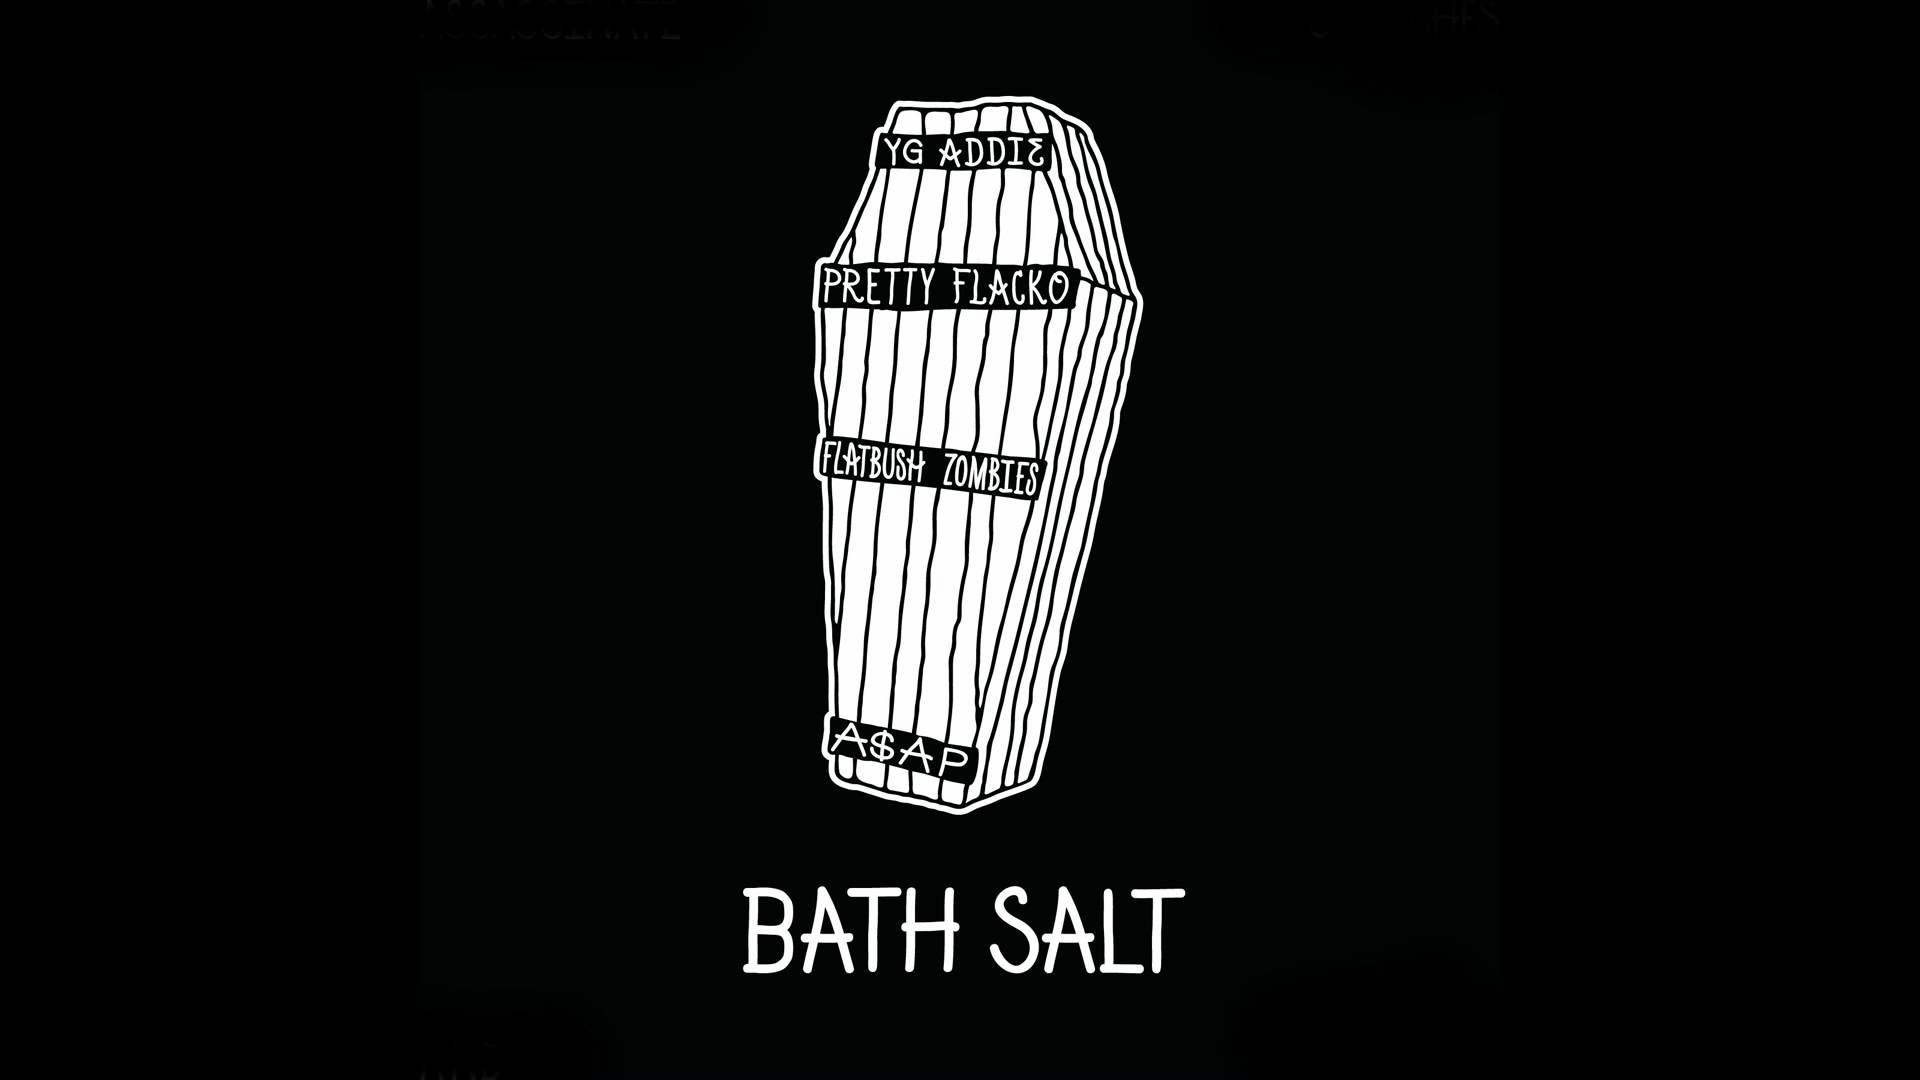 1920x1080 ASAP Mob (ASAP Rocky & ASAP Ant) - Bath Salt ft. Flatbush Zombies | Wavo